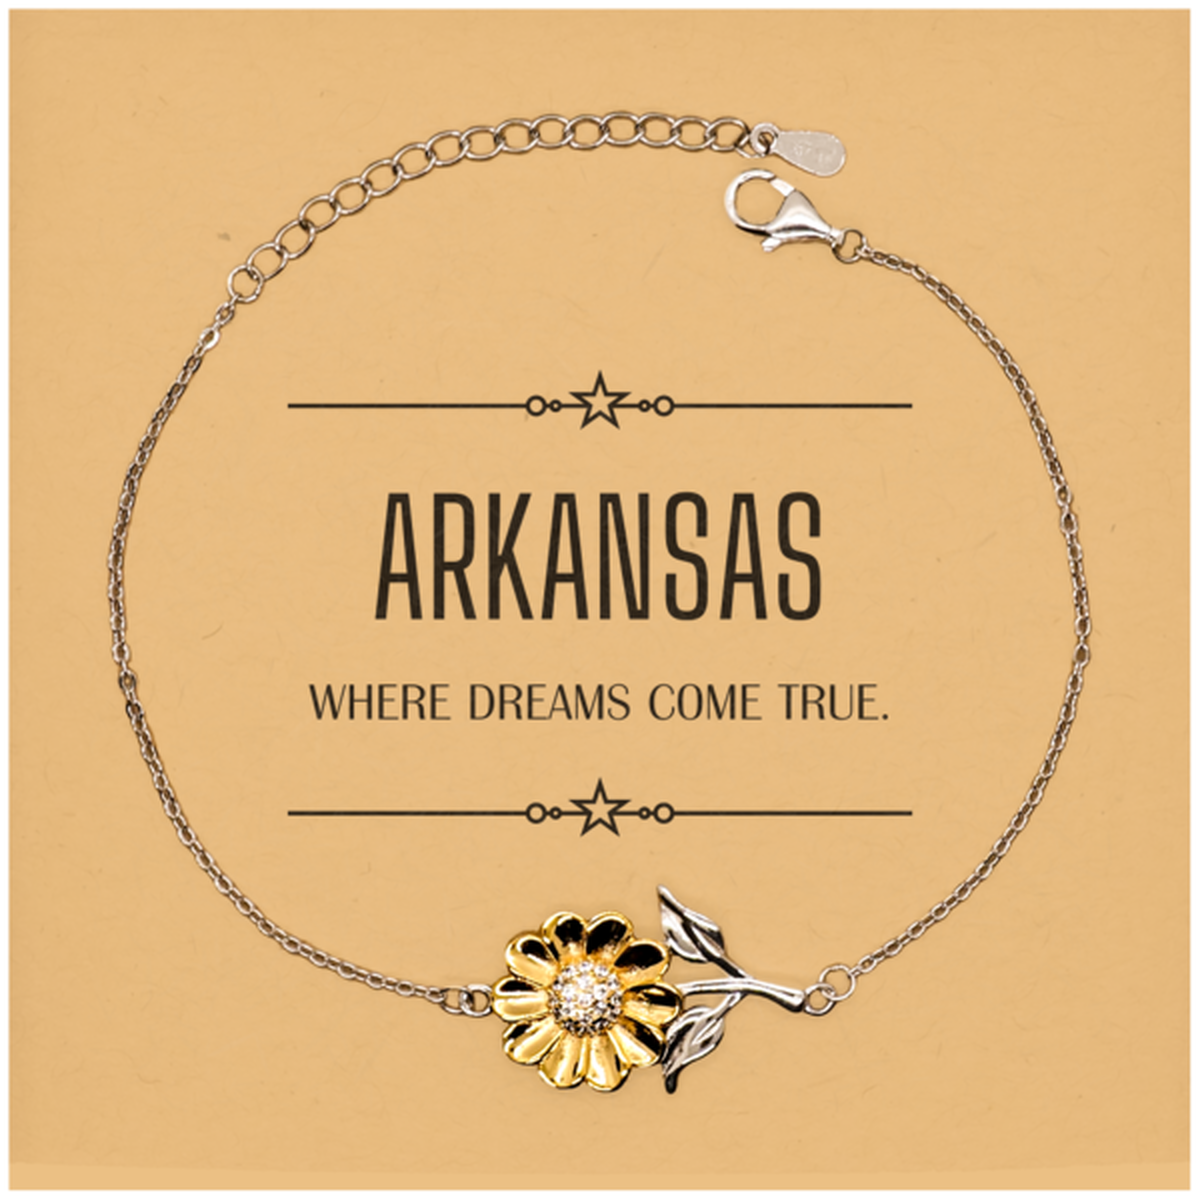 Love Arkansas State Sunflower Bracelet, Arkansas Where dreams come true, Birthday Christmas Inspirational Gifts For Arkansas Men, Women, Friends